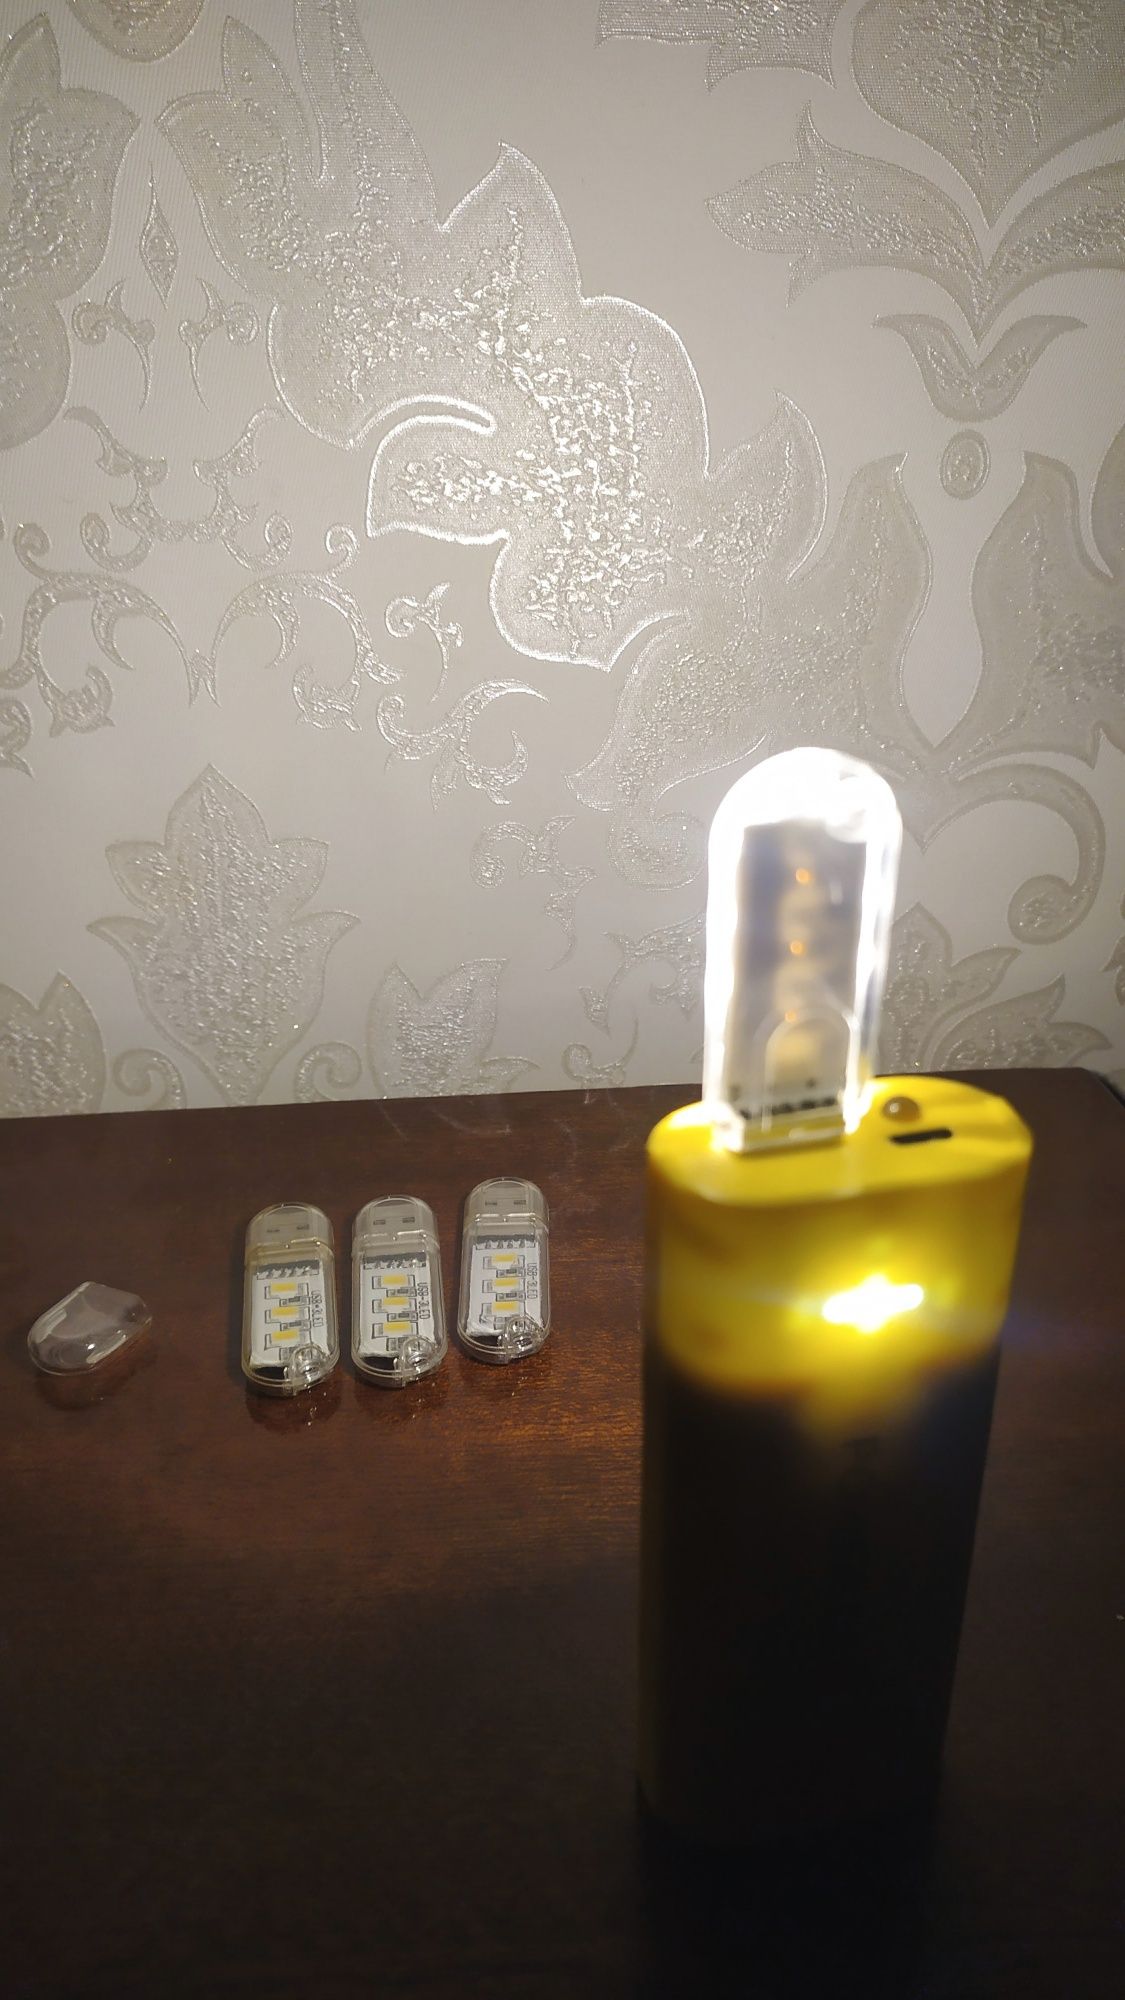 USB світильник LED, юсб свічка, 3 діоди, ночник, USB фонарик флешка